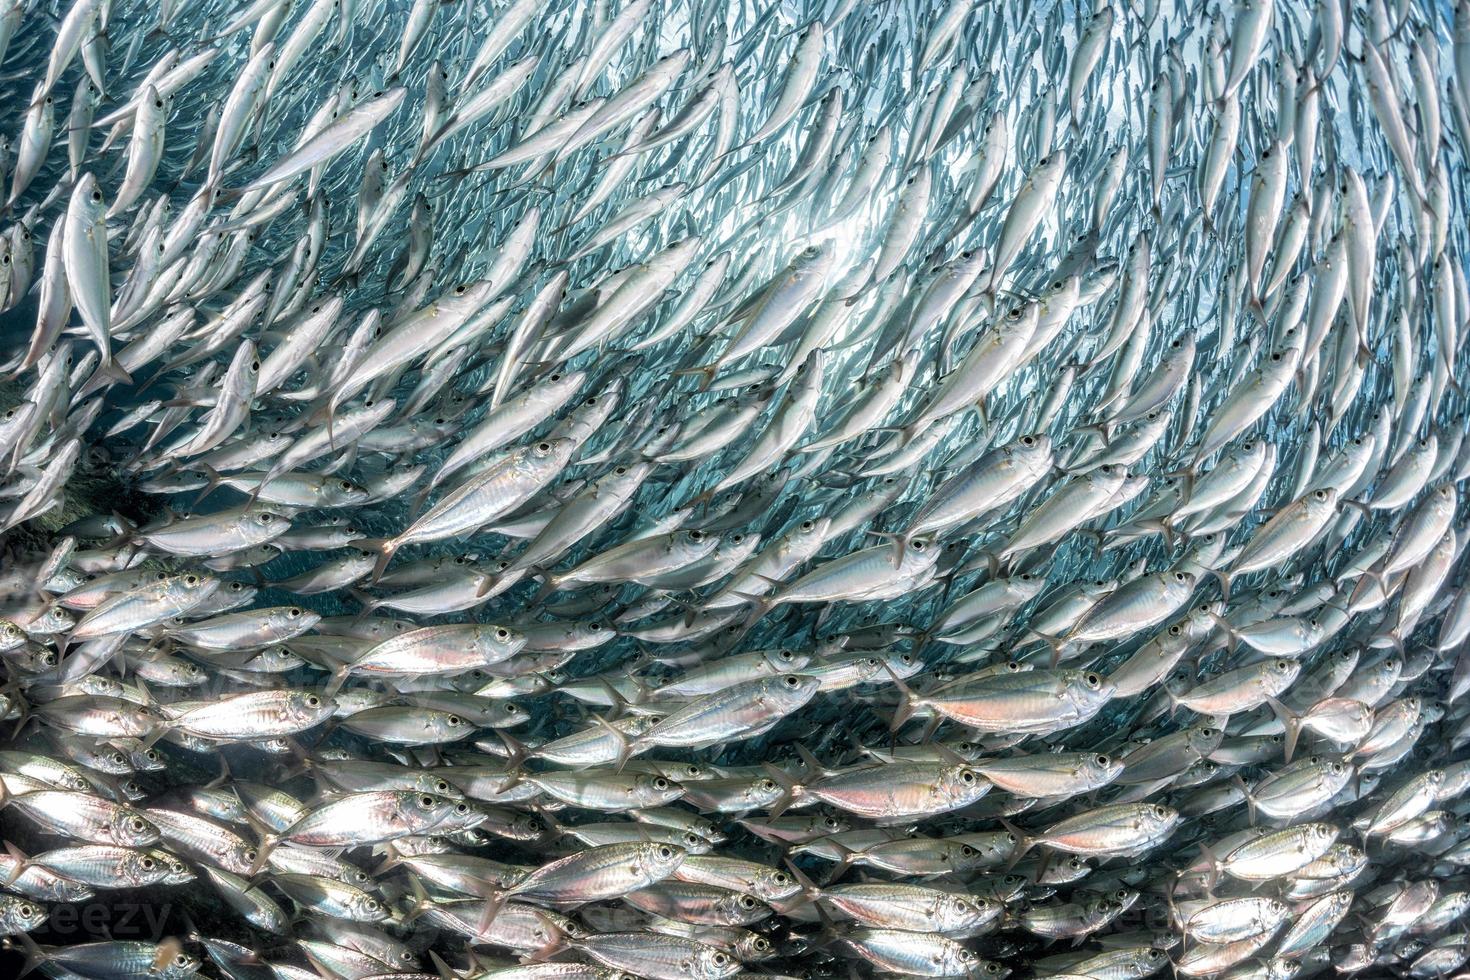 sardine school of fish underwater photo